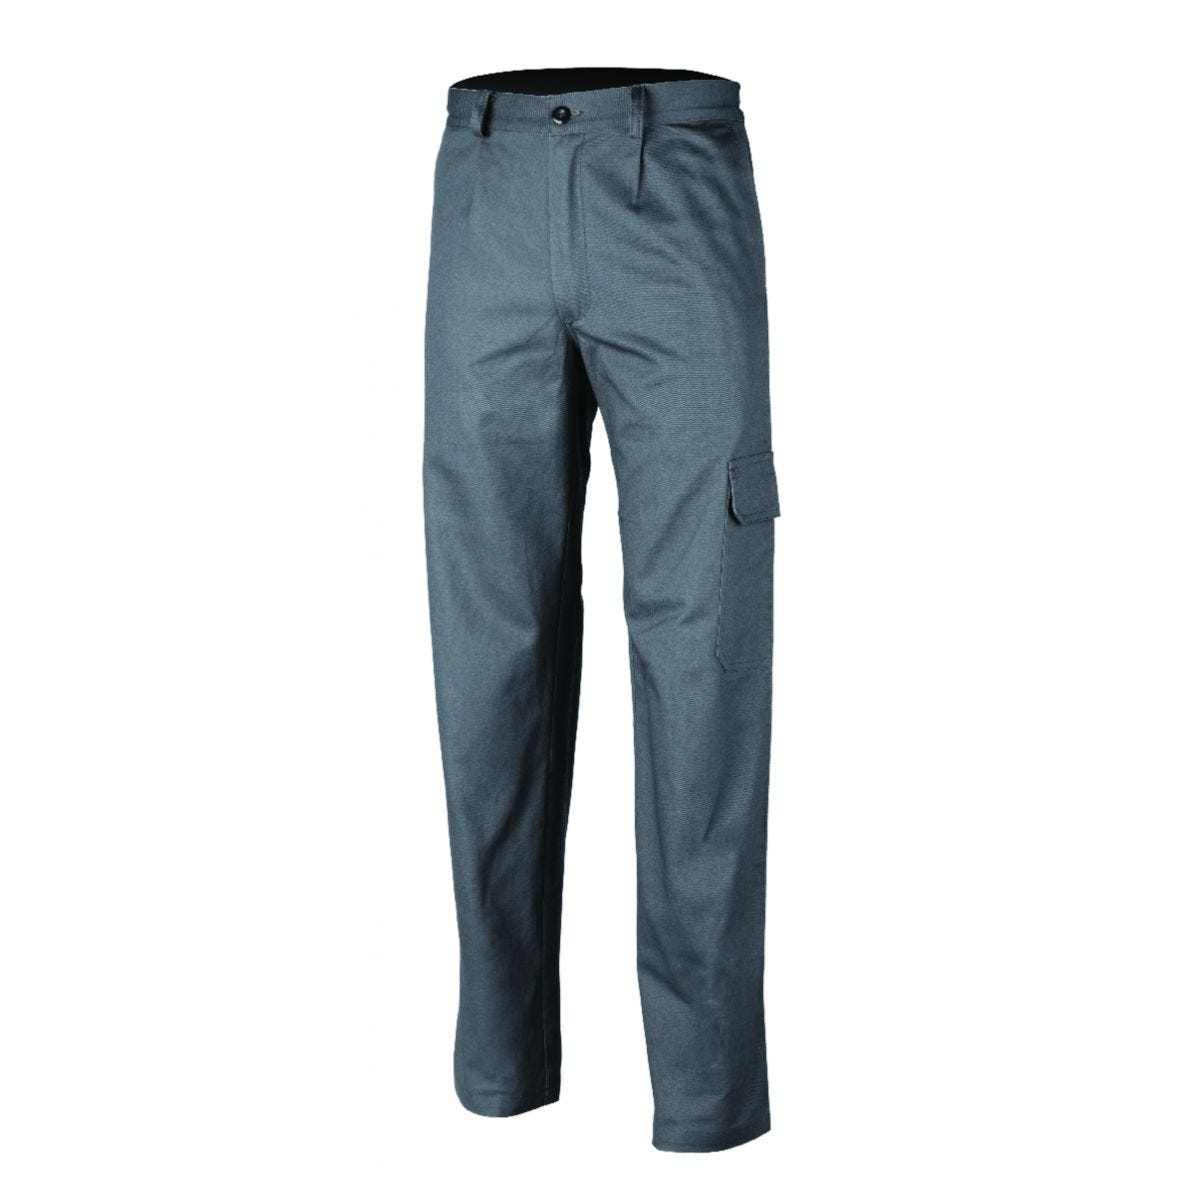 Pantalon PARTNER gris - COVERGUARD - Taille 2XL 0